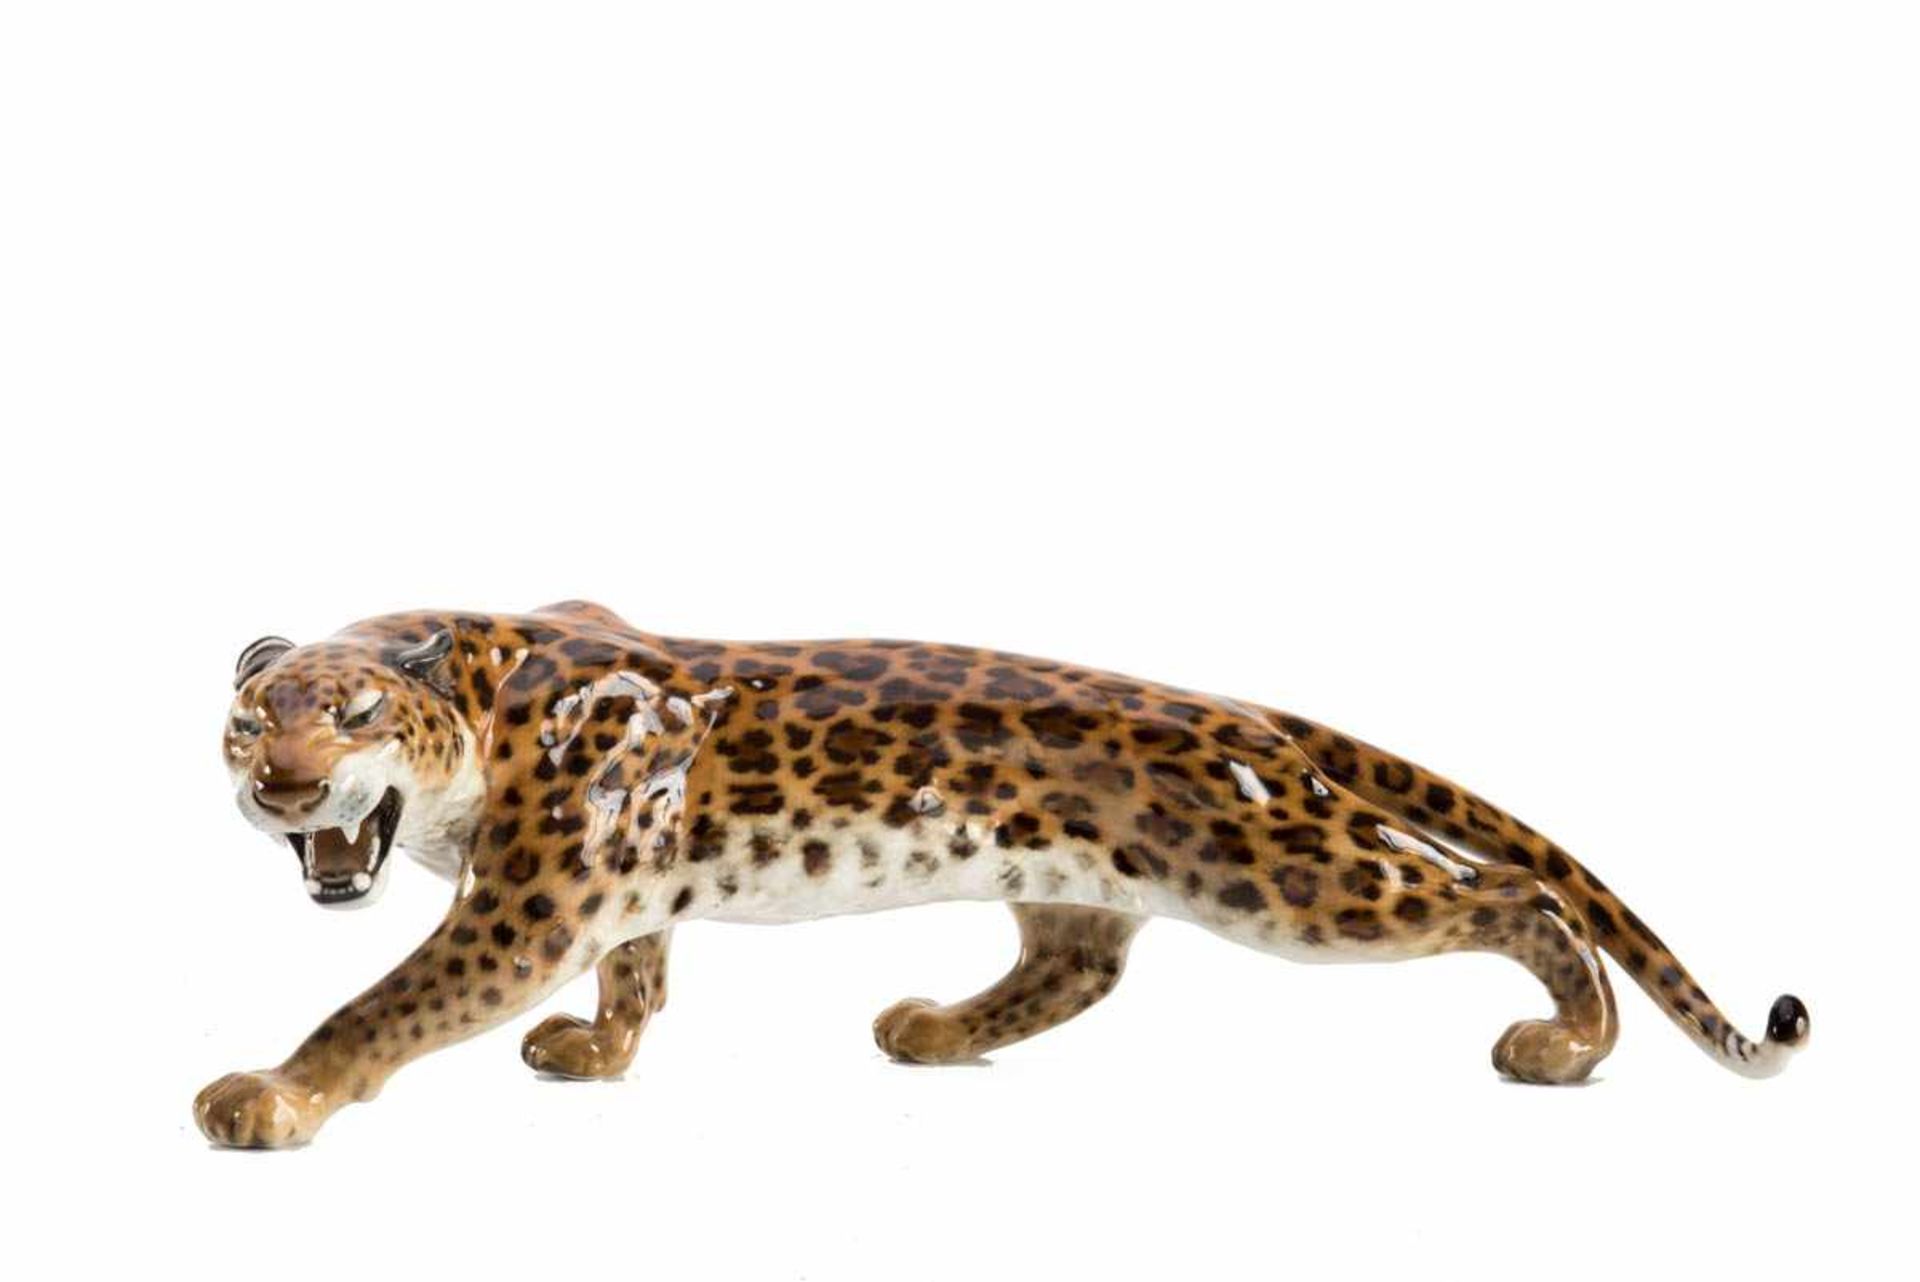 Leopard, Hutschenreuther Darstellung des Raubtieres in lauernder Position. Schwanzspitze rest.